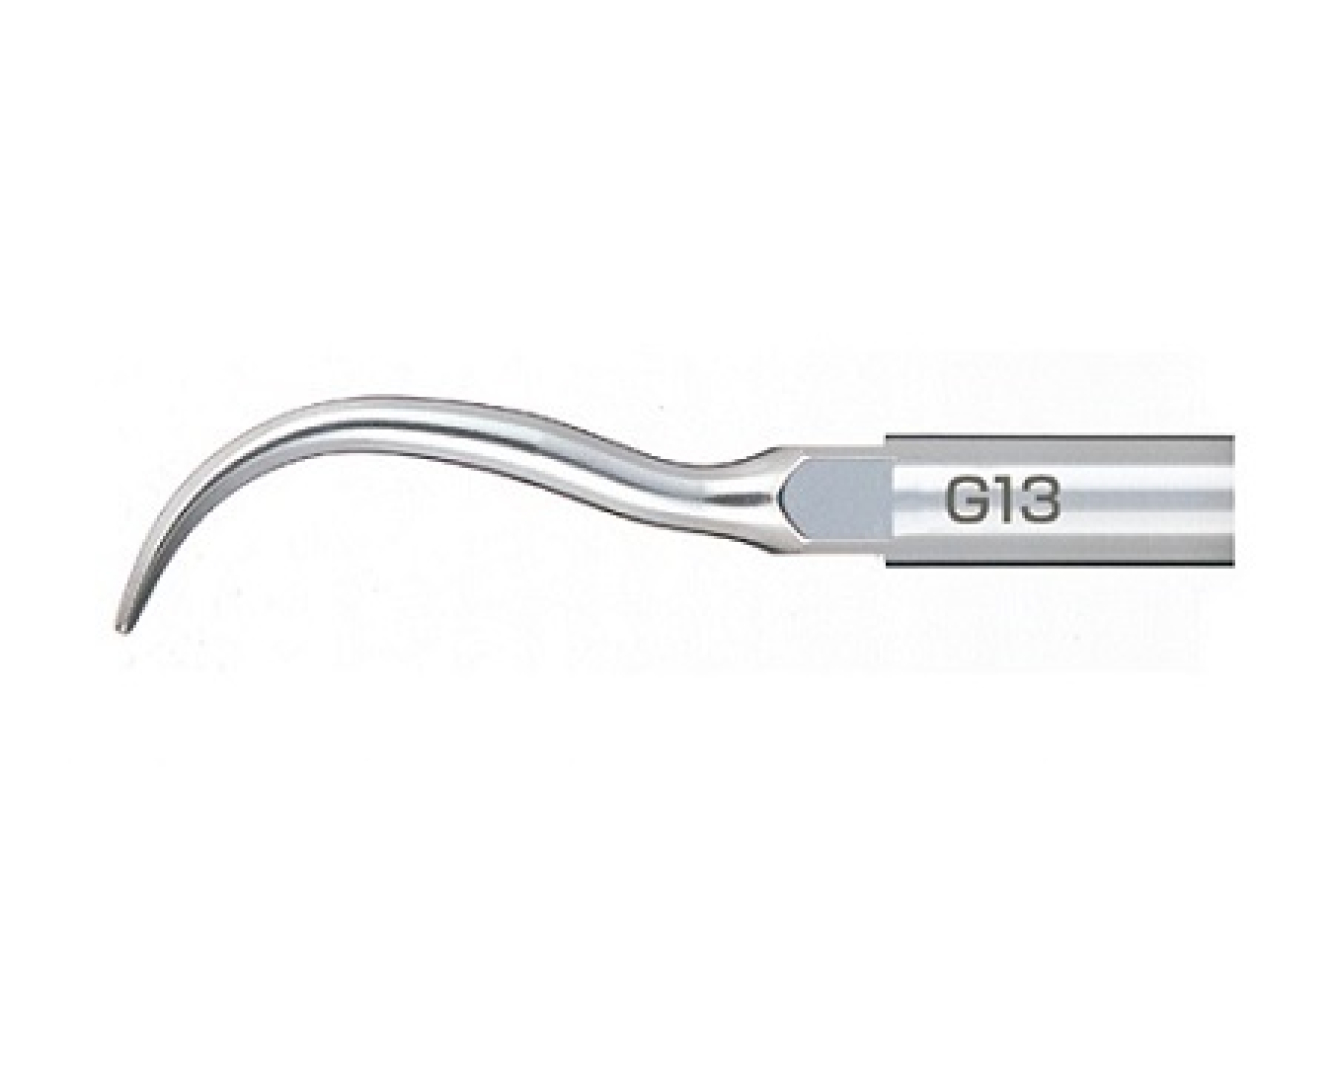 G13 Cерповидная стоматологическая насадка  к скалеру Varios, предназначена для удаления камня с шейки зуба, NSK (Япония)